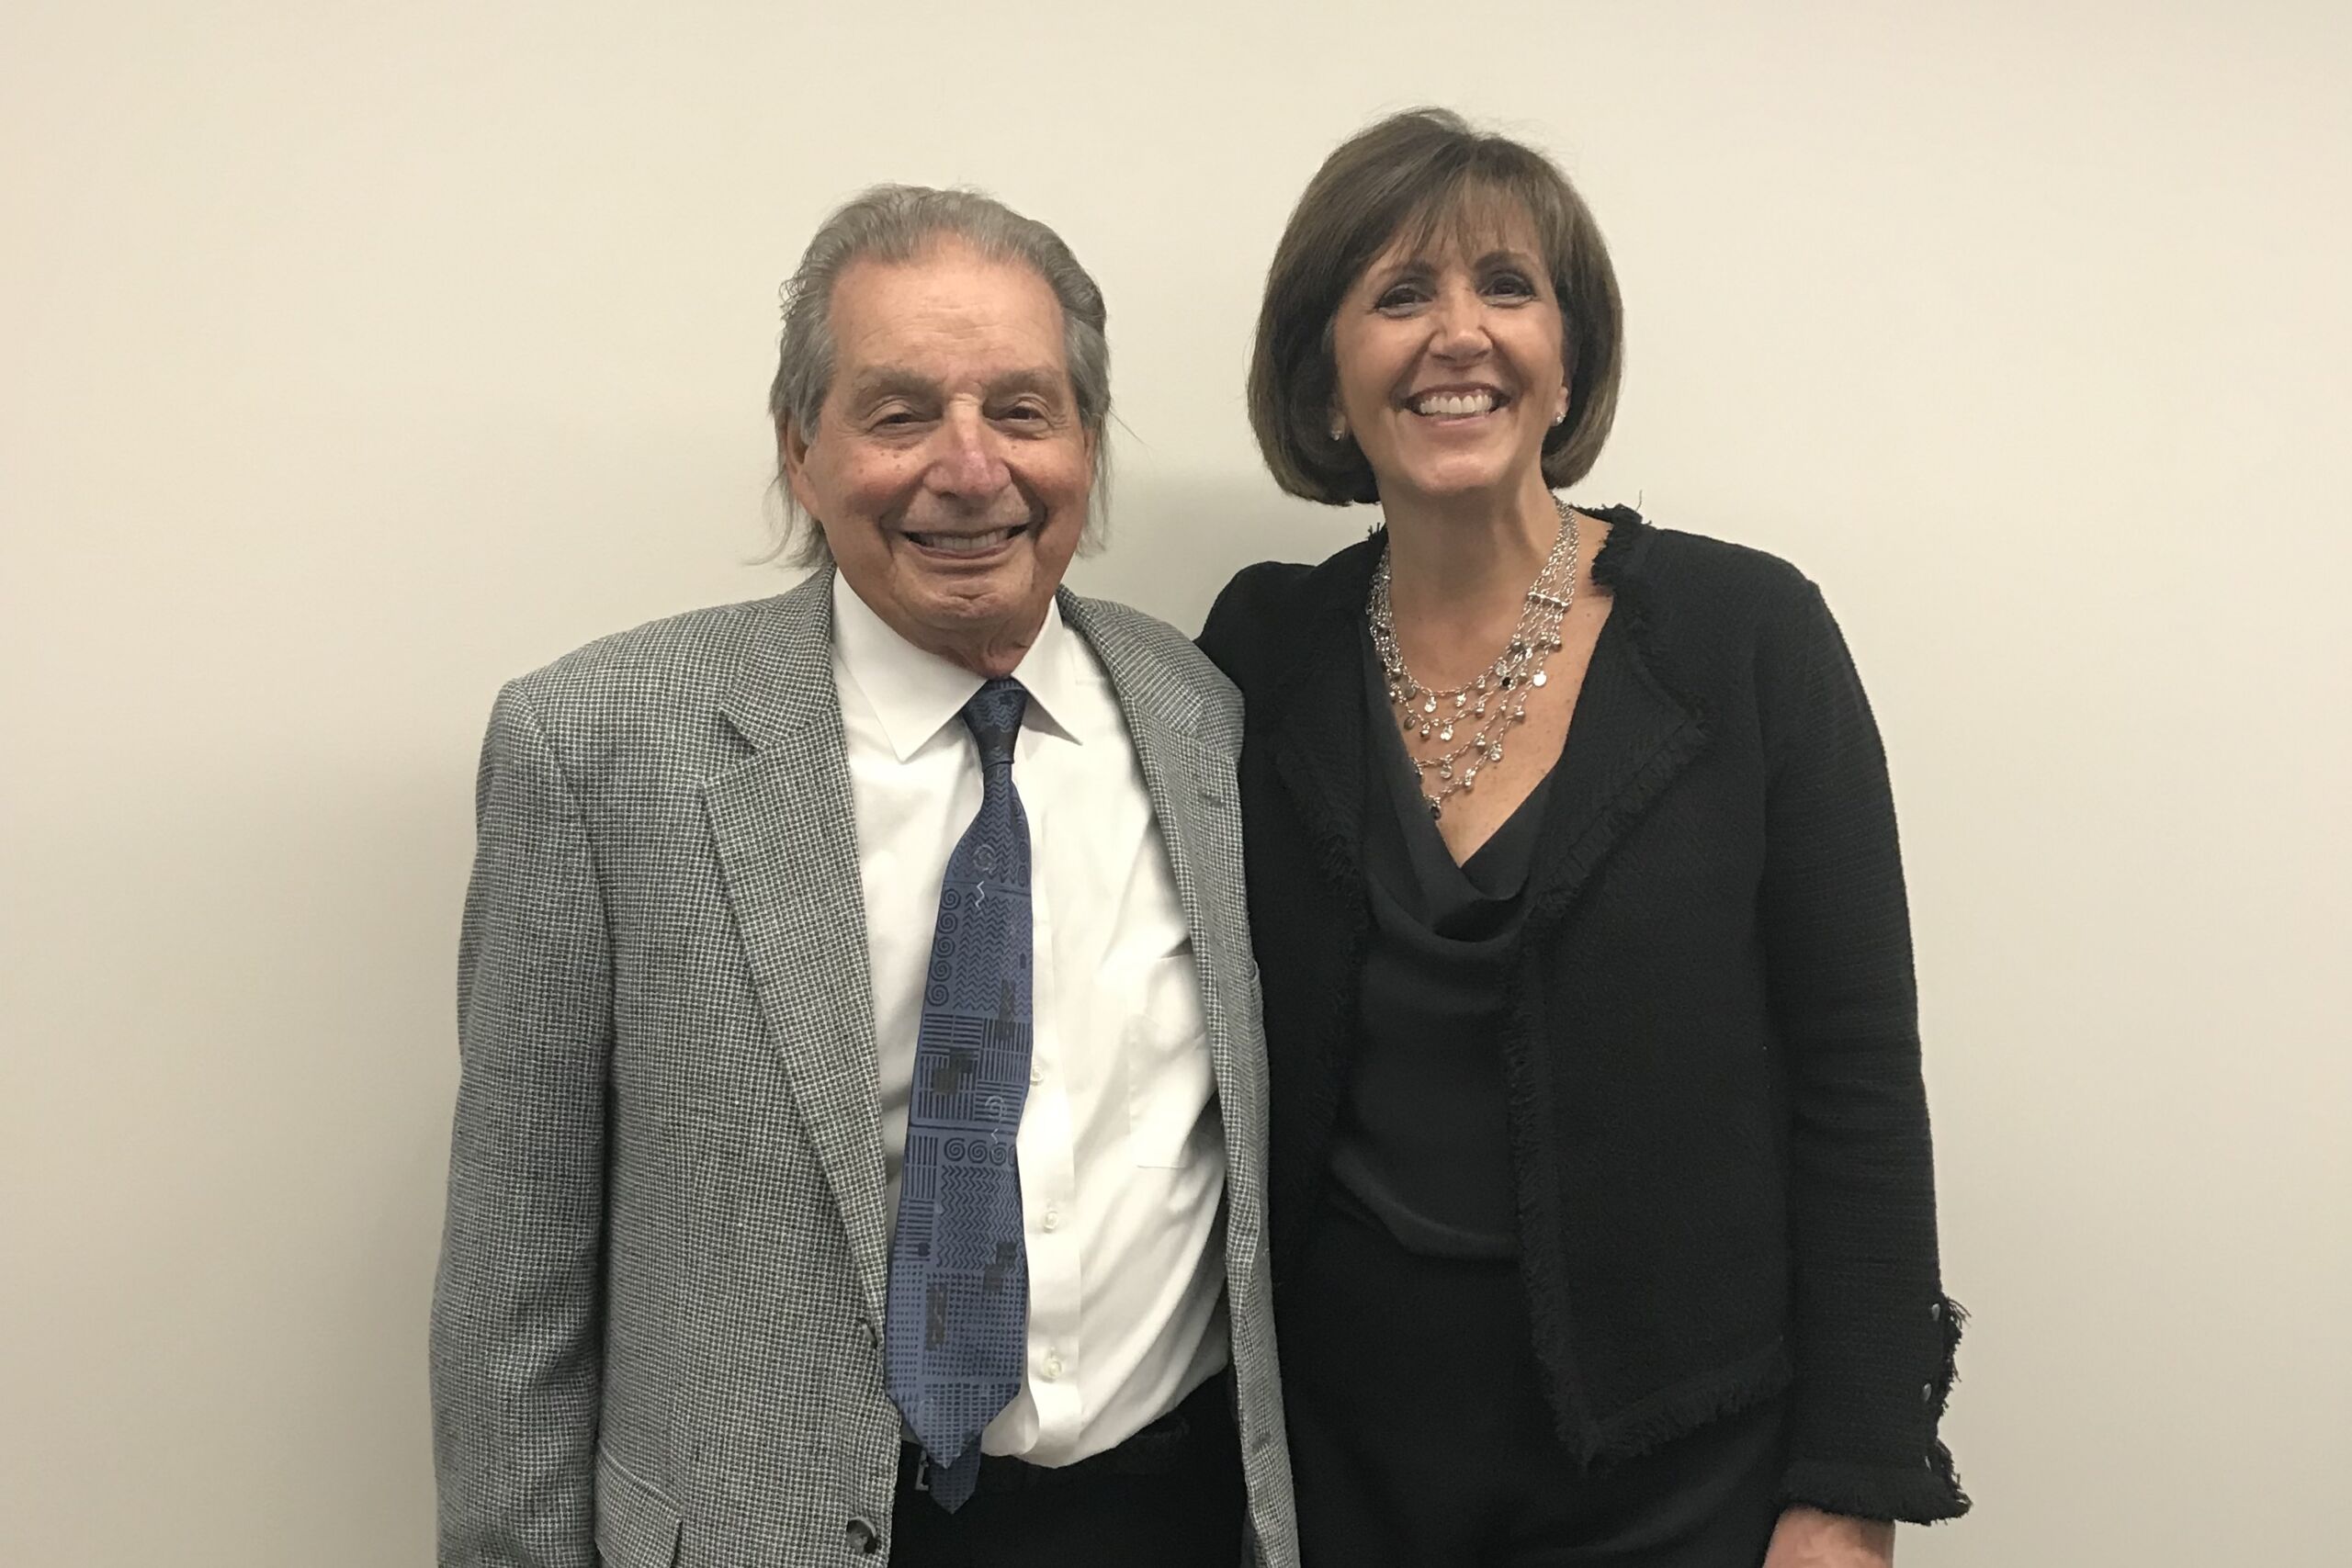 Dr. Rossomando and Susan Ferrante of A-Dec